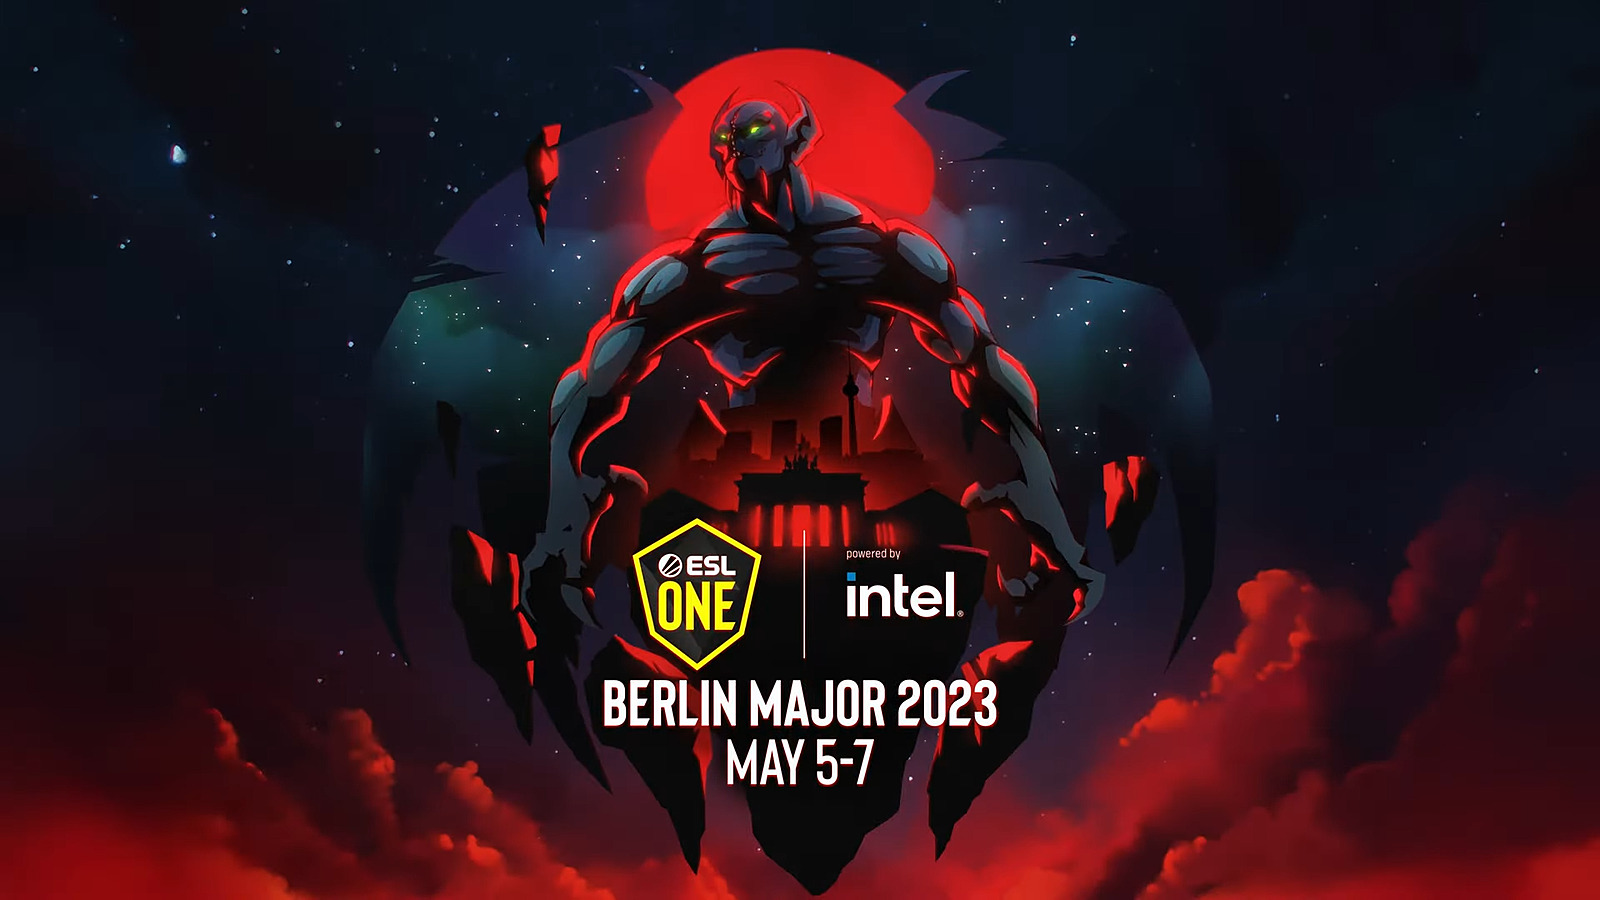 Анонс ESL One Berlin Major 2023. Всё о главном турнире весны по Dota 2